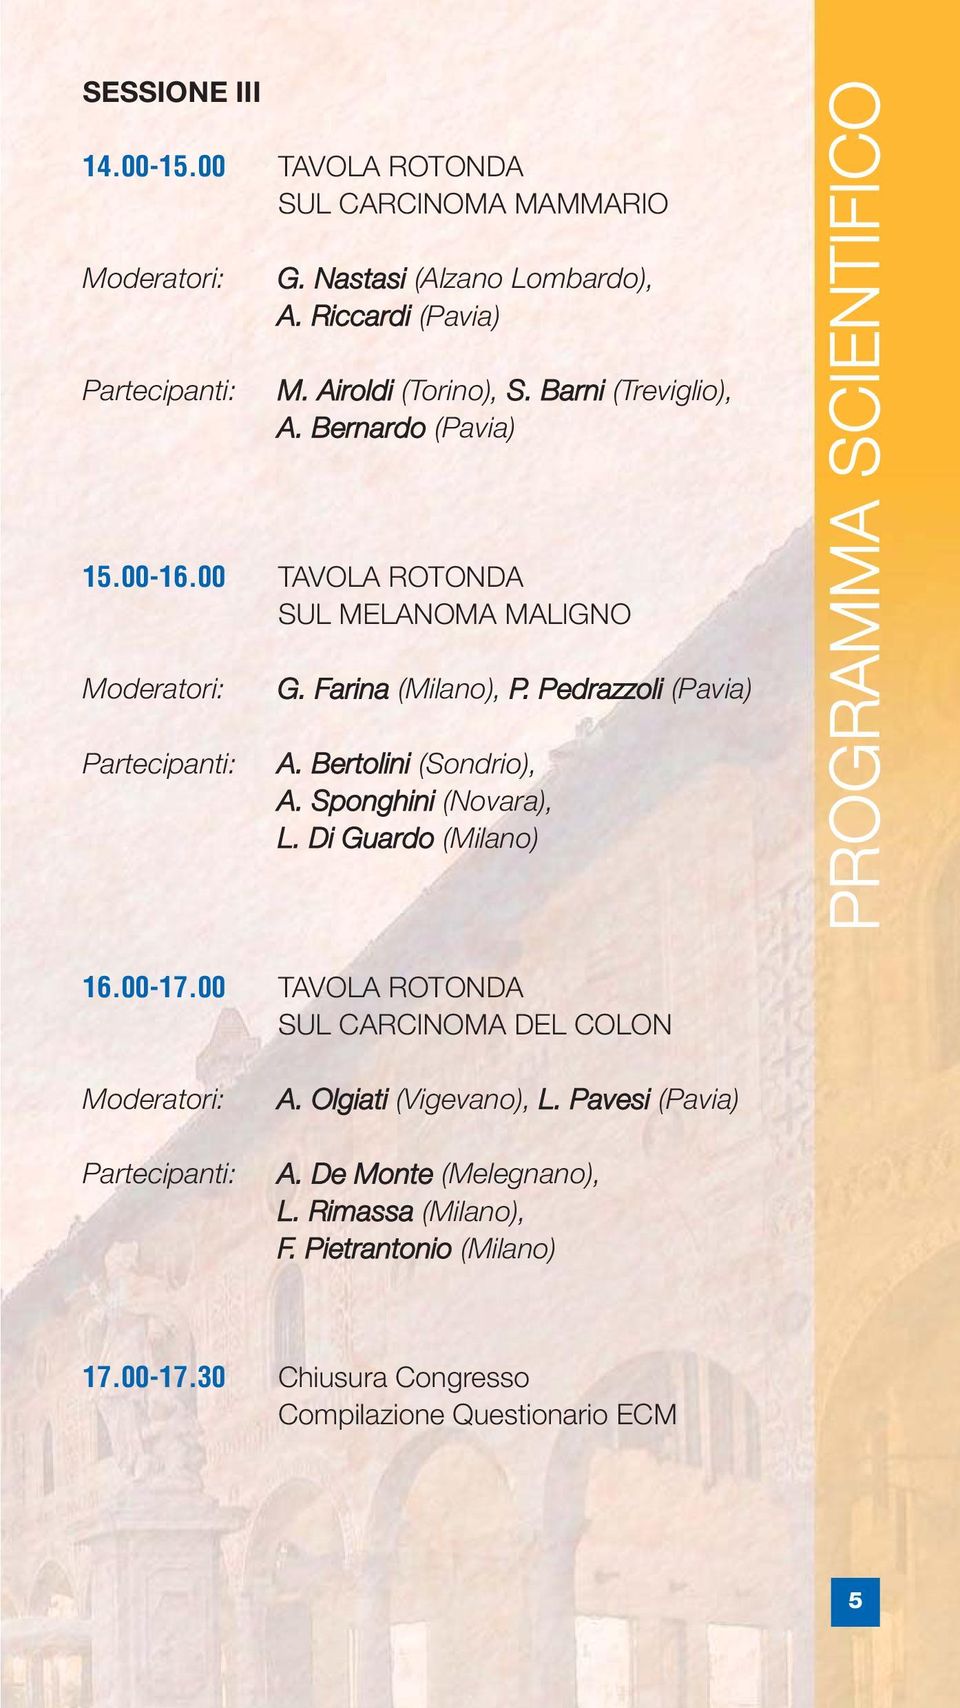 Bertolini (Sondrio), A. Sponghini (Novara), L. Di Guardo (Milano) PROGRAMMA SCIENTIFICO 16.00-17.